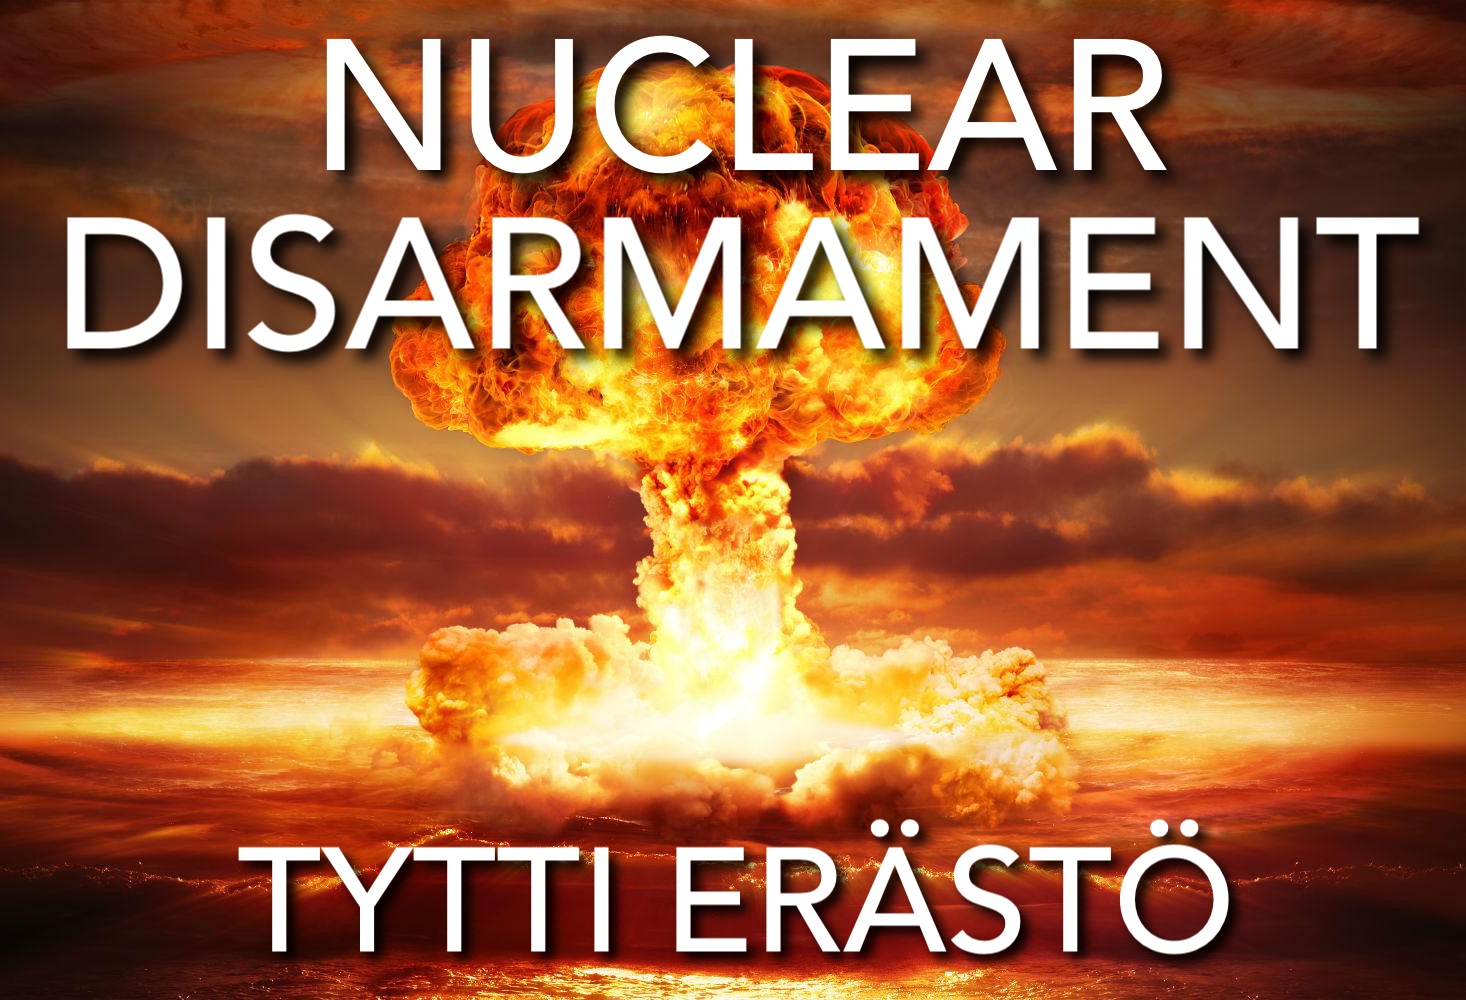 Nuclear disarmament